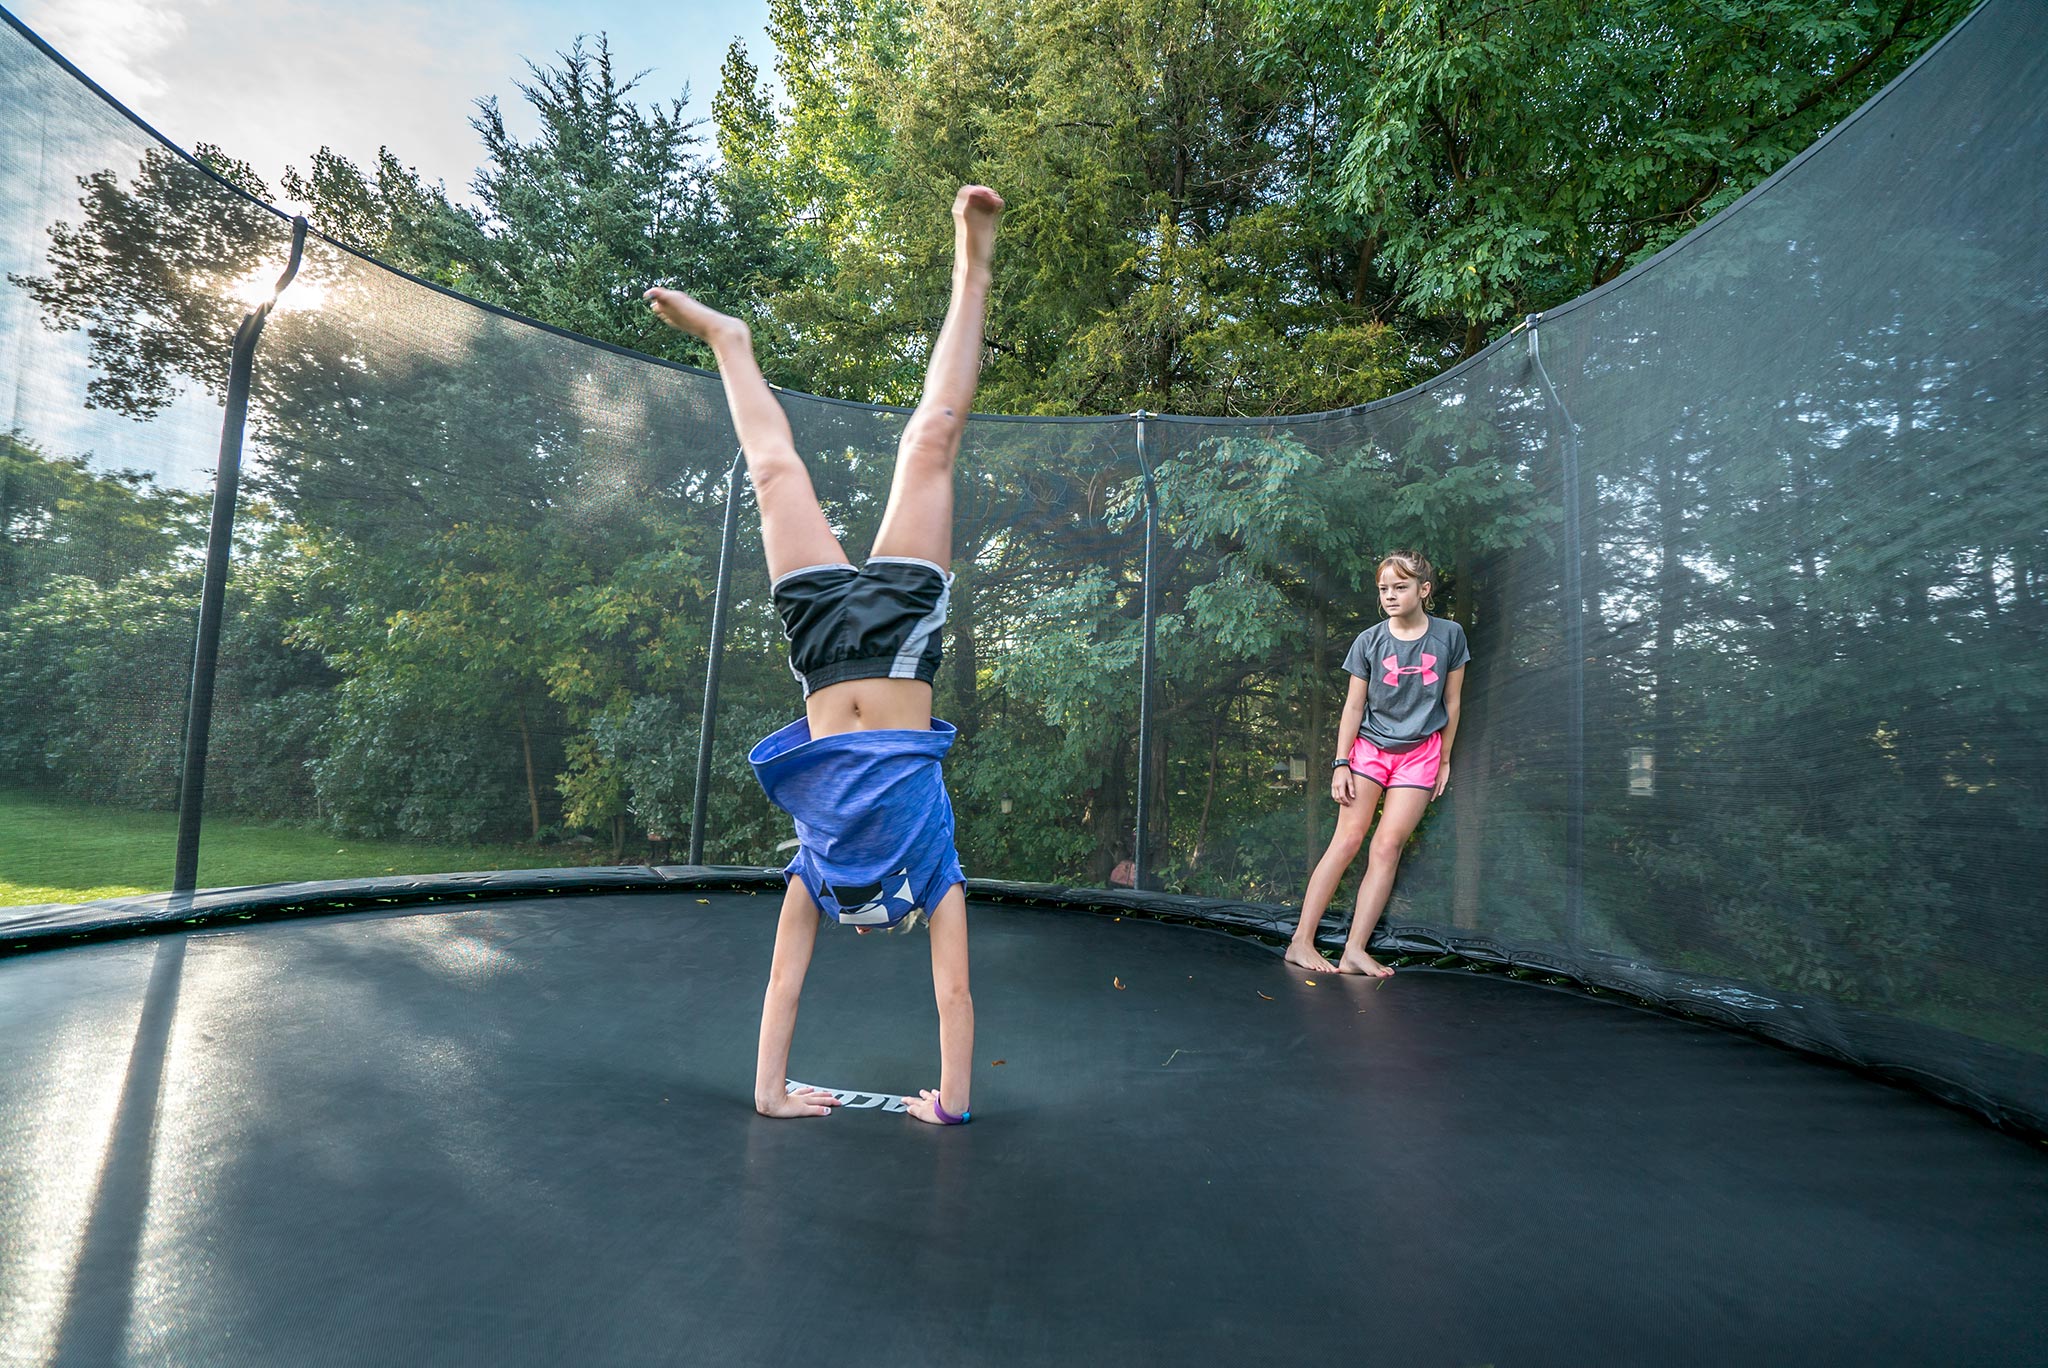 Tyttö seisoo käsillään trampoliinilla, toinen katselee ja nojaa turvaverkkoon